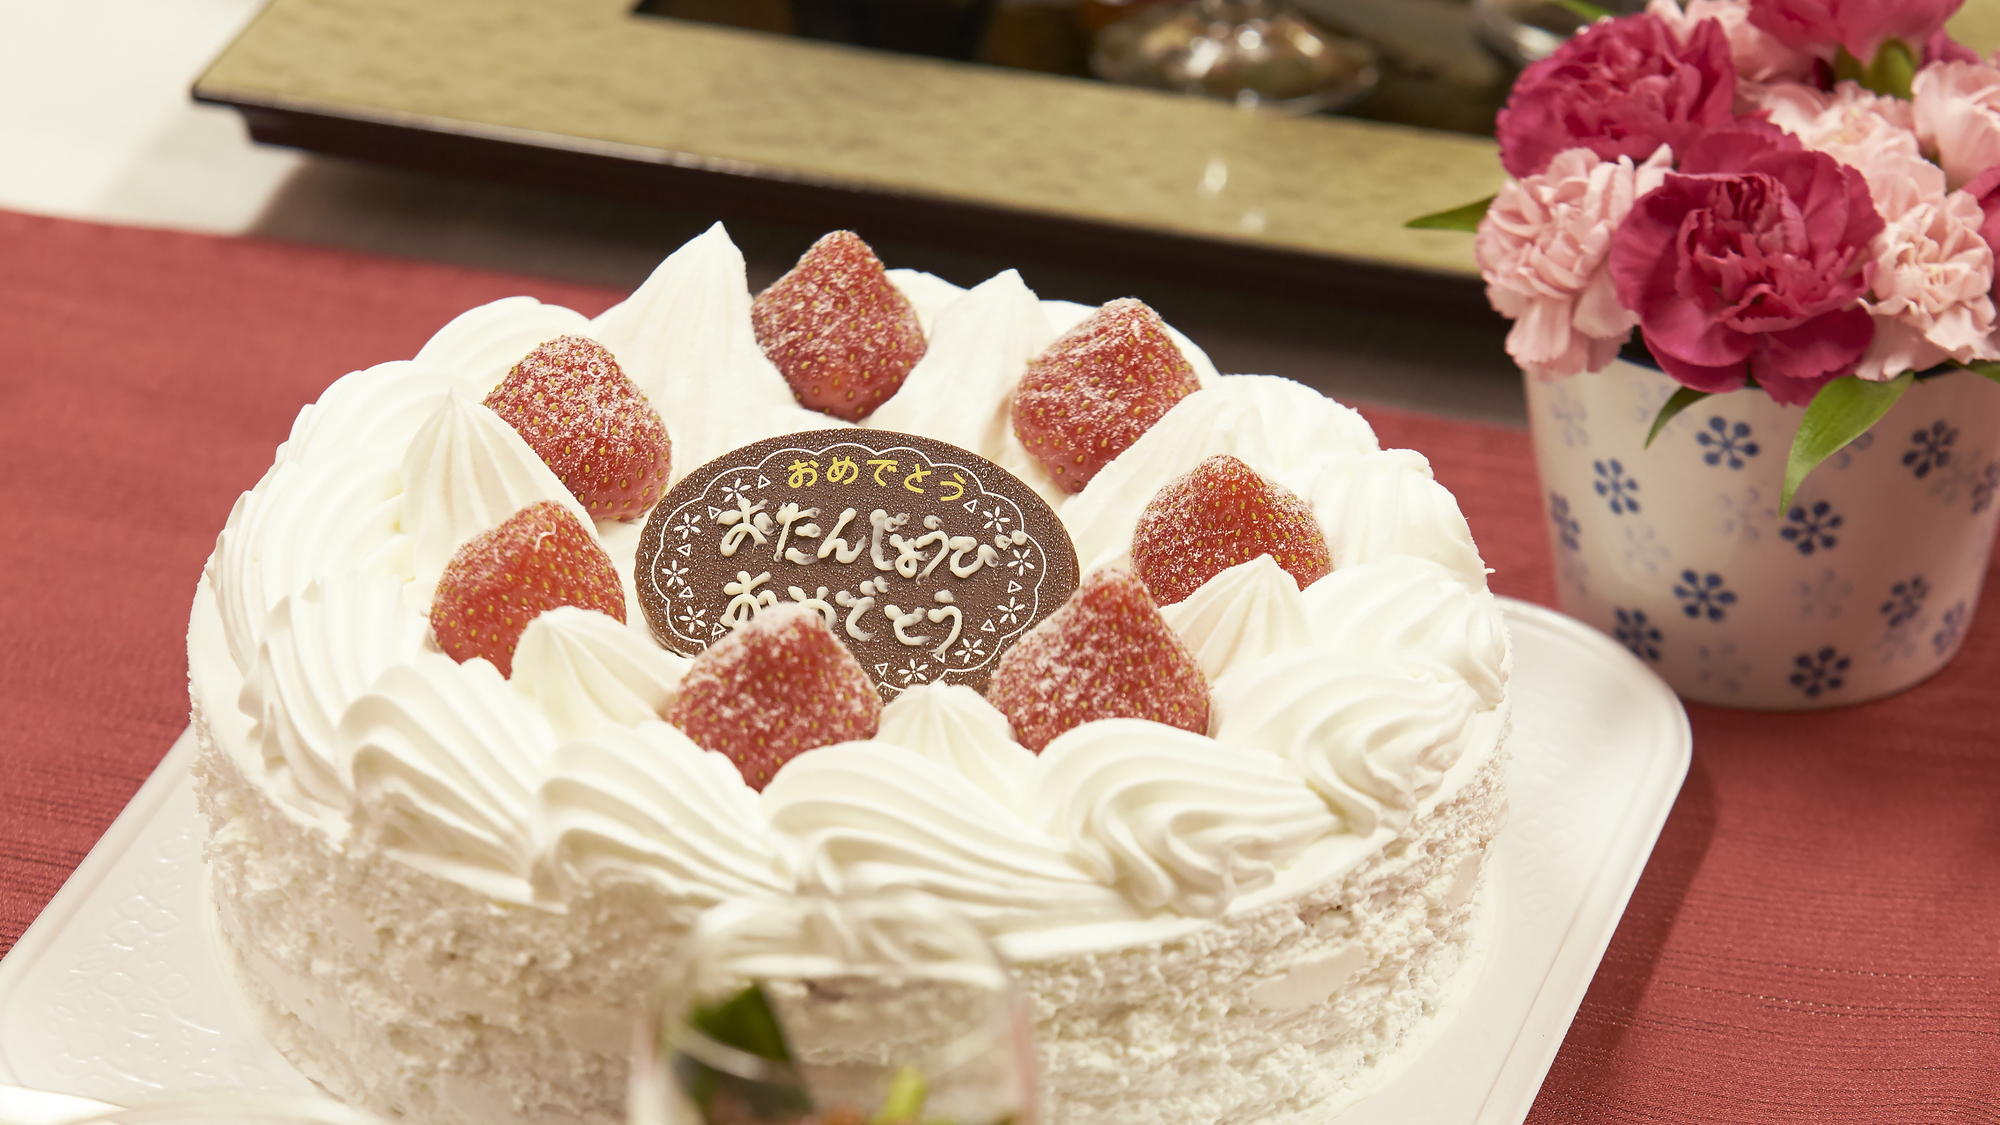  【ケーキ】お誕生日や記念日にケーキのご予約可能です。